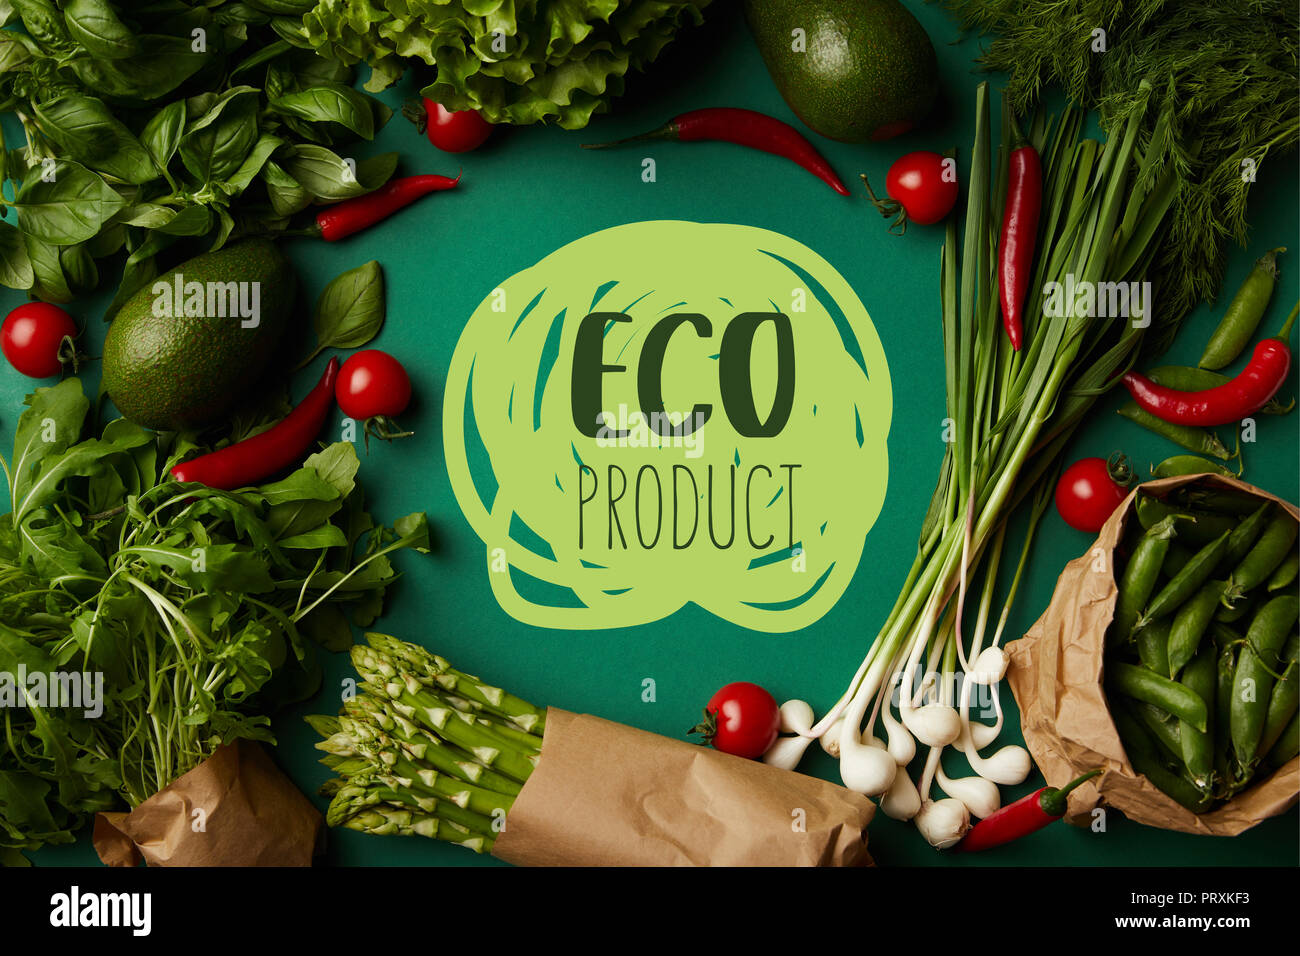 Vue de dessus du châssis ronds faits de divers légumes mûrs sur la surface verte avec 'eco' produit le lettrage Banque D'Images